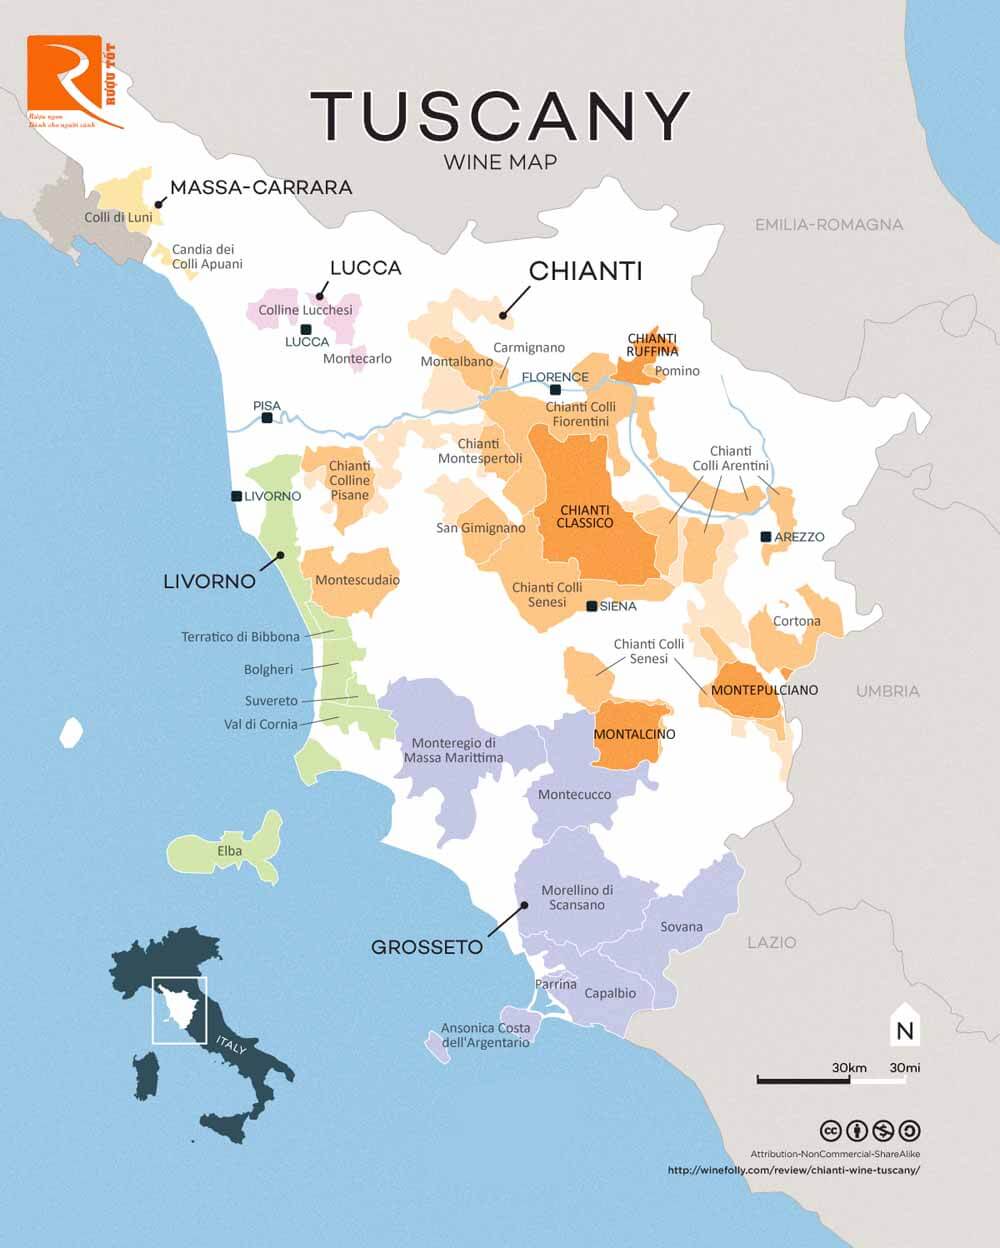 Chianti là một khu vực nhỏ ở Tuscany. Nhưng loại rượu Chianti được phép sản xuất mọi nơi ở Tuscany.